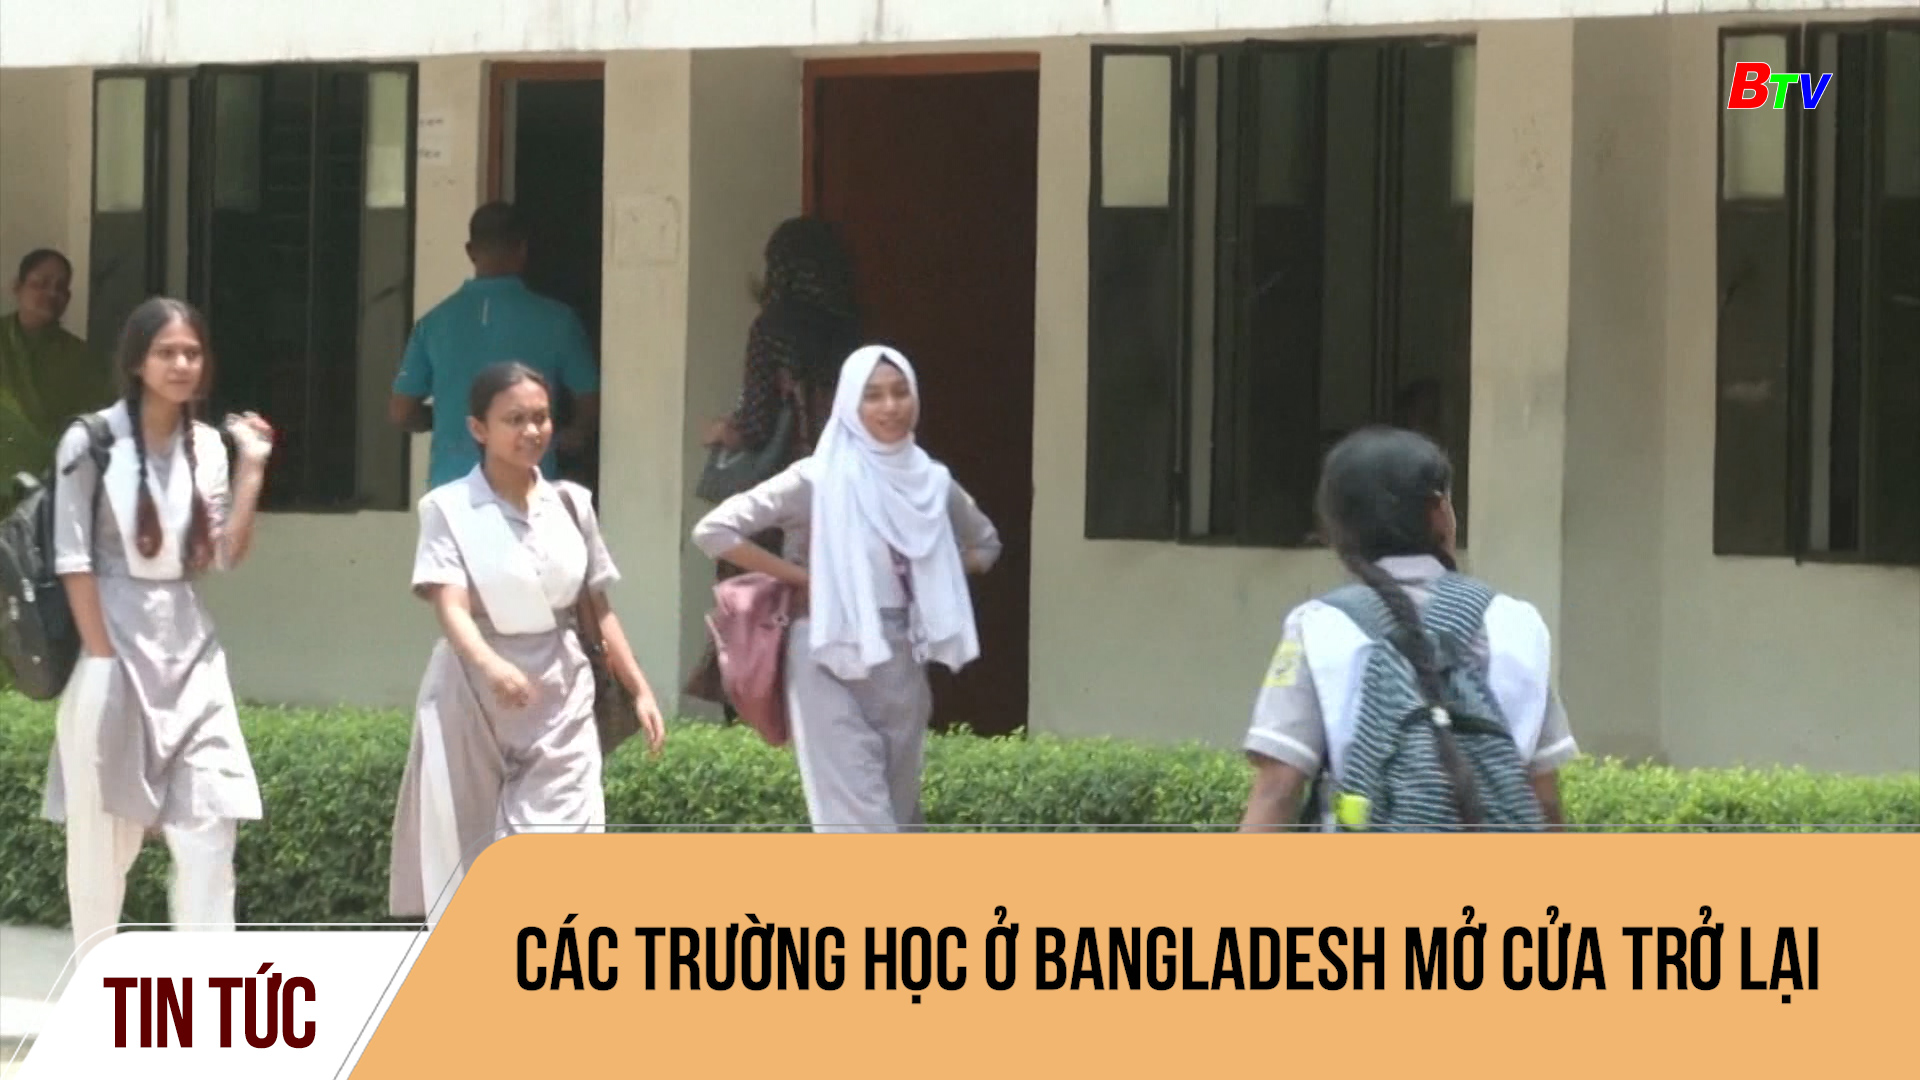 Các trường học ở Bangladesh mở cửa trở lại